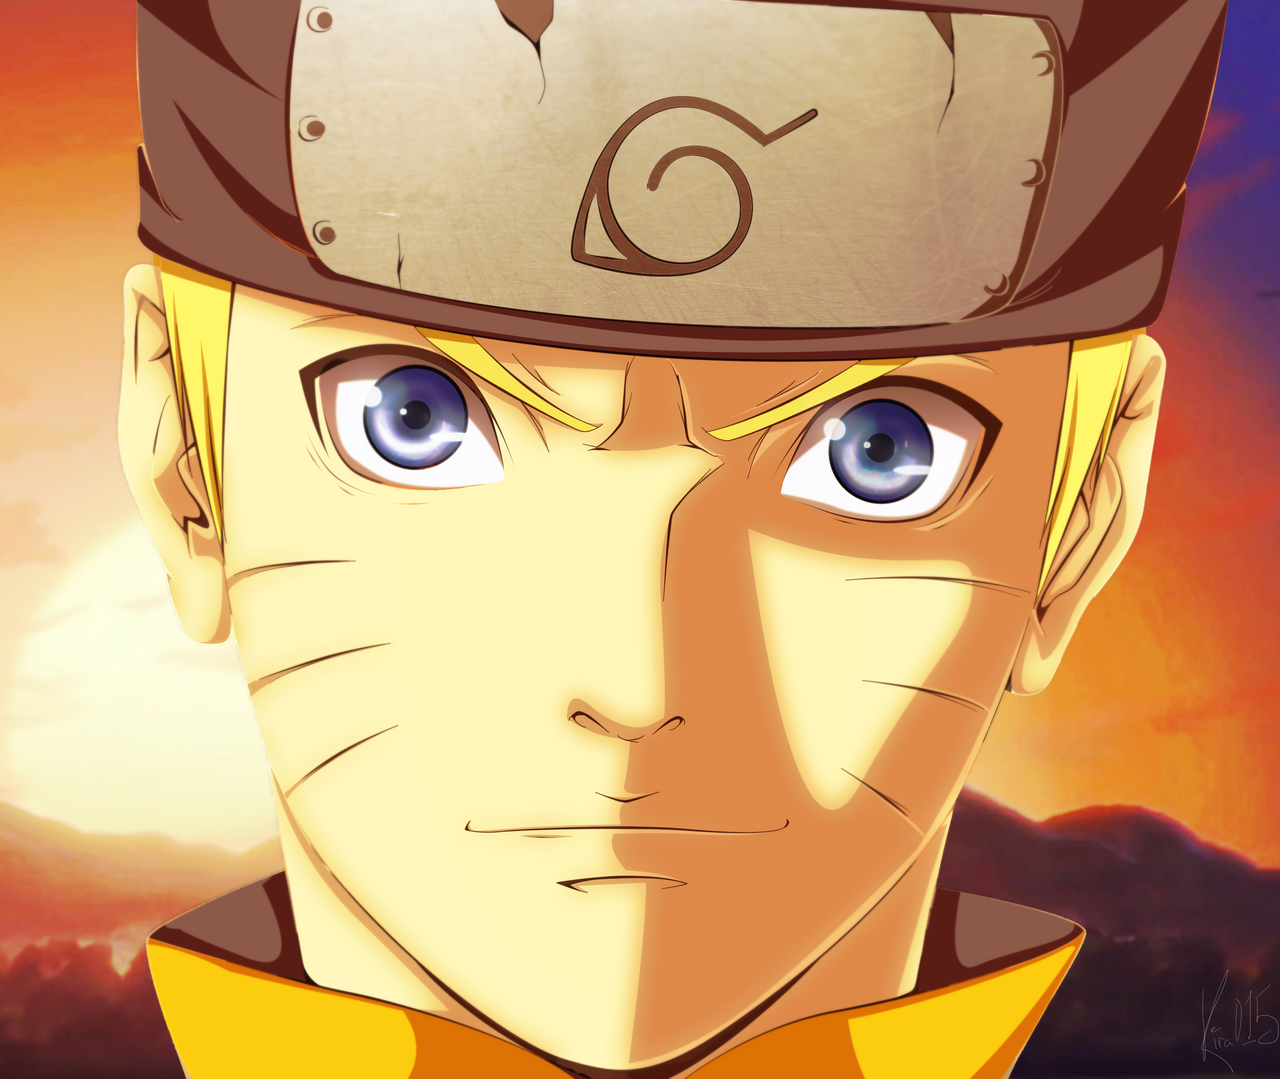 Naruto Uzumaki in 'The Last Movie' by Kira015 on DeviantArt